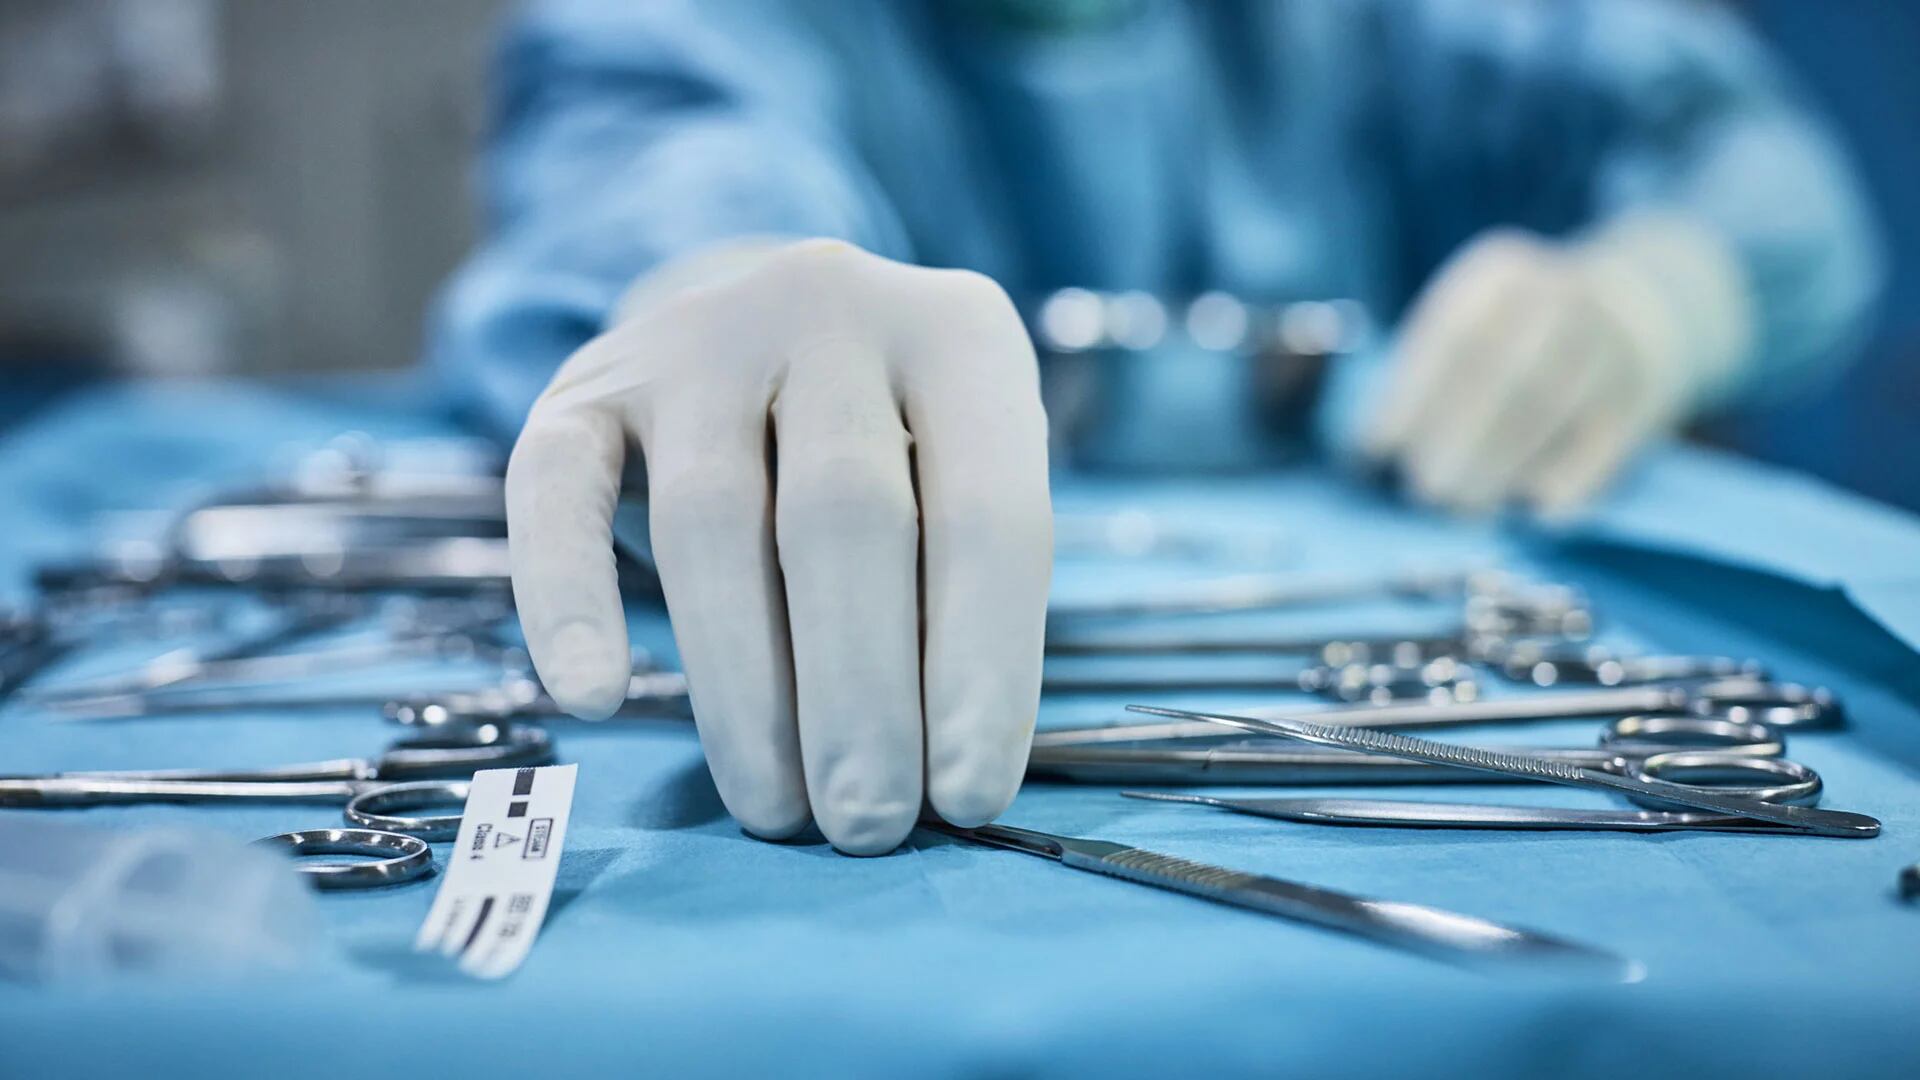 Los cirujanos cardiovasculares se sumaron al reclamo por la falta de insumos vitales: “Esta situación no puede continuar”